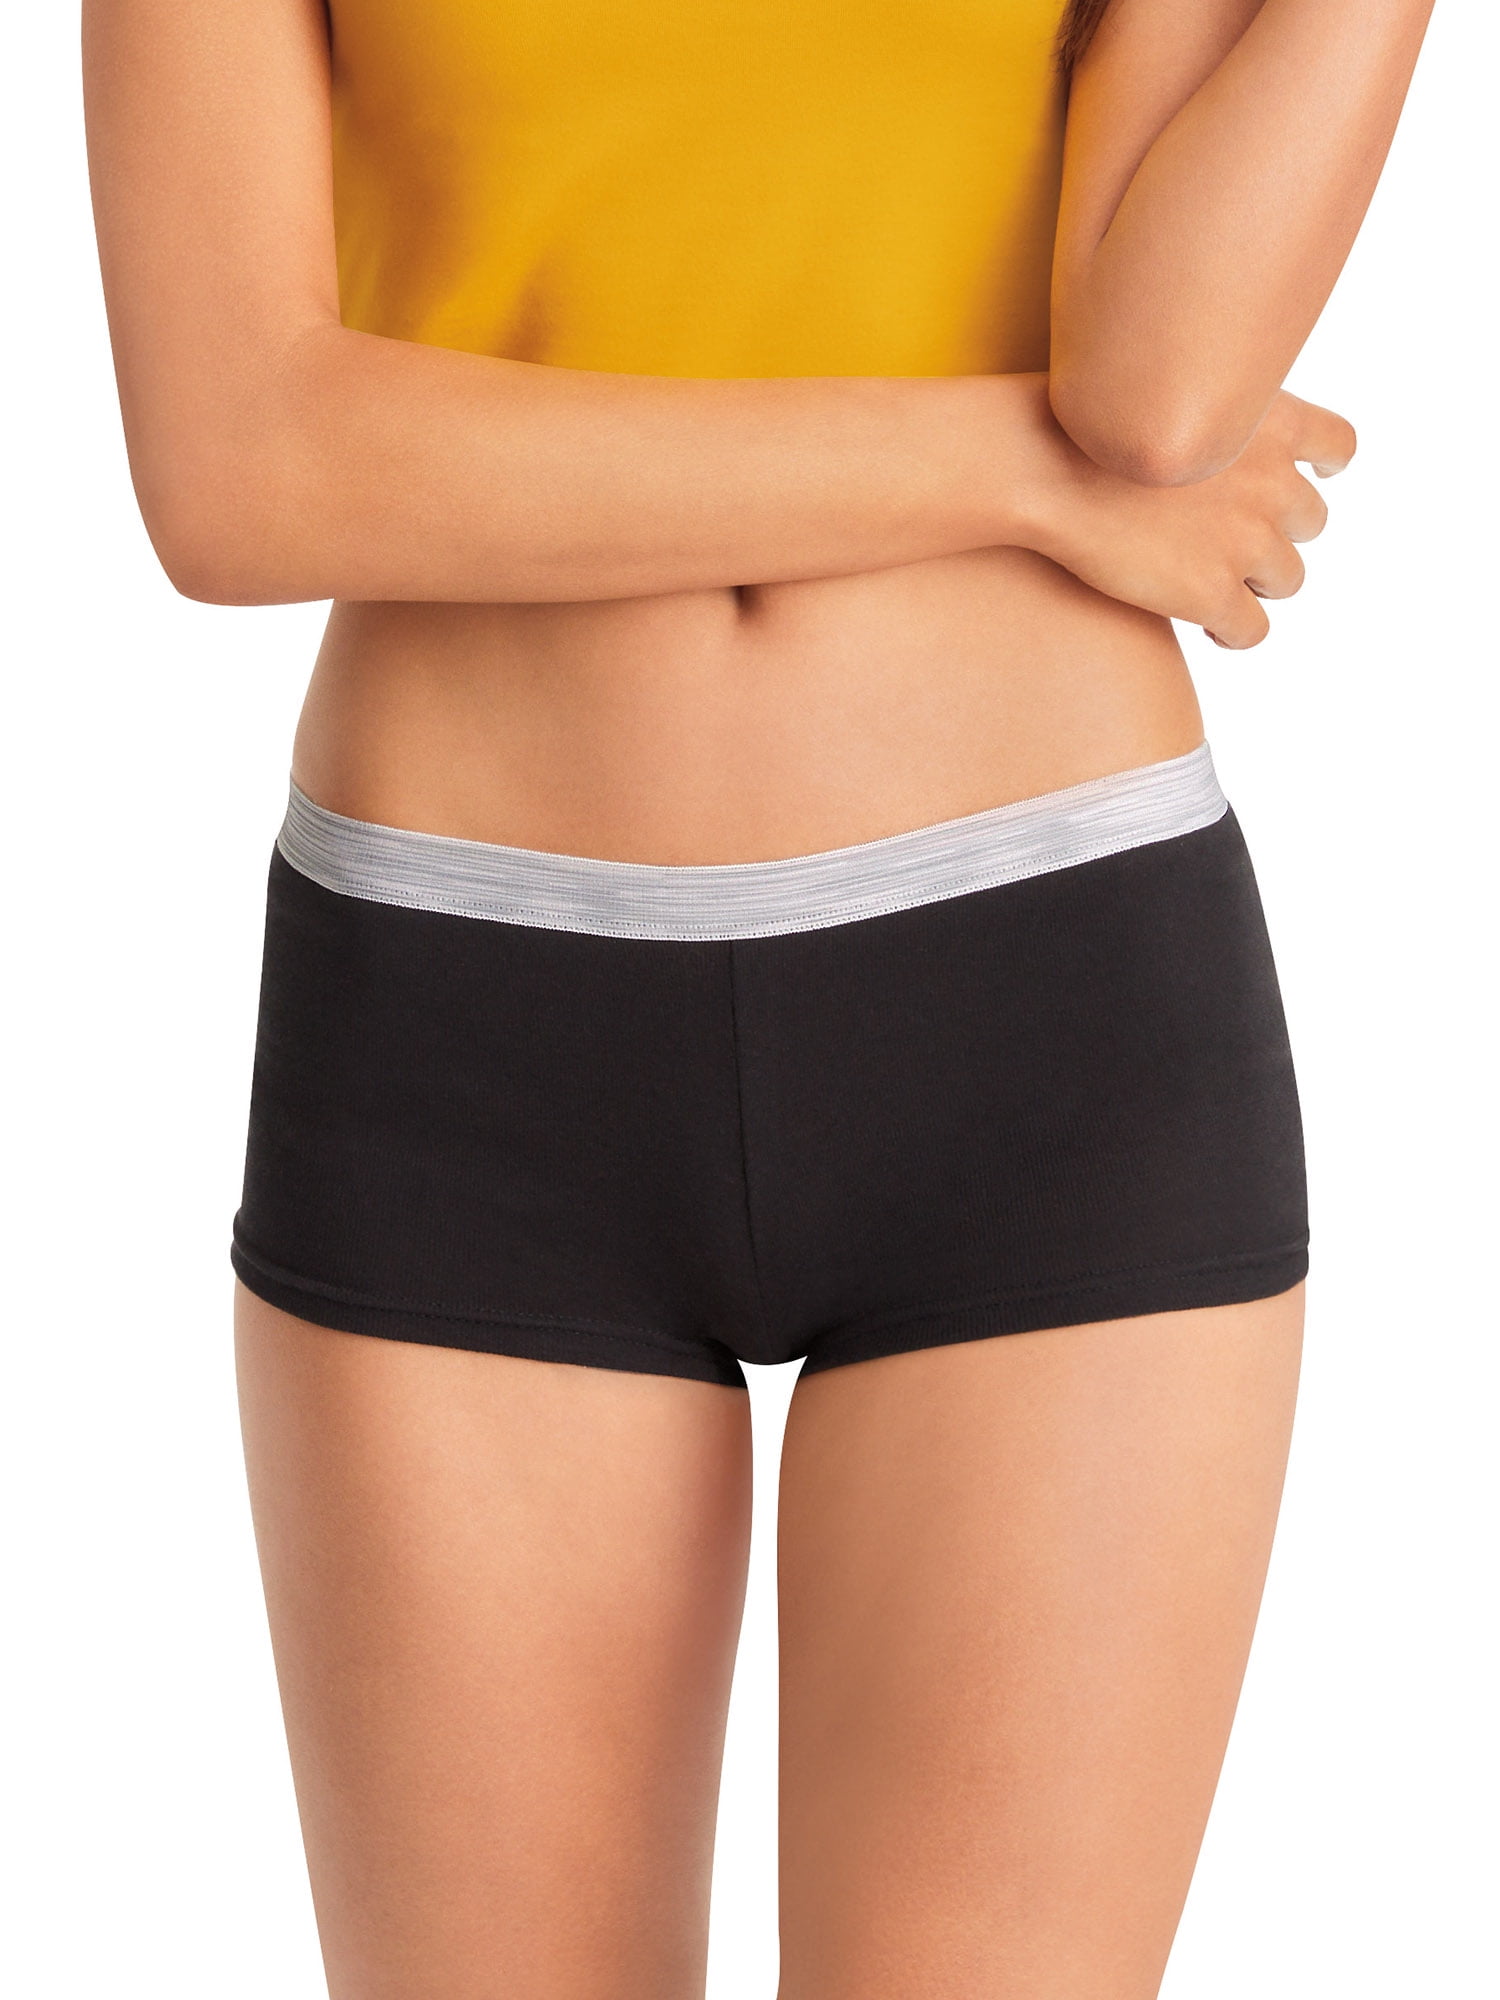 Hanes Women's Cotton Sporty Briefs Underwear, 6-Pack, 59% OFF